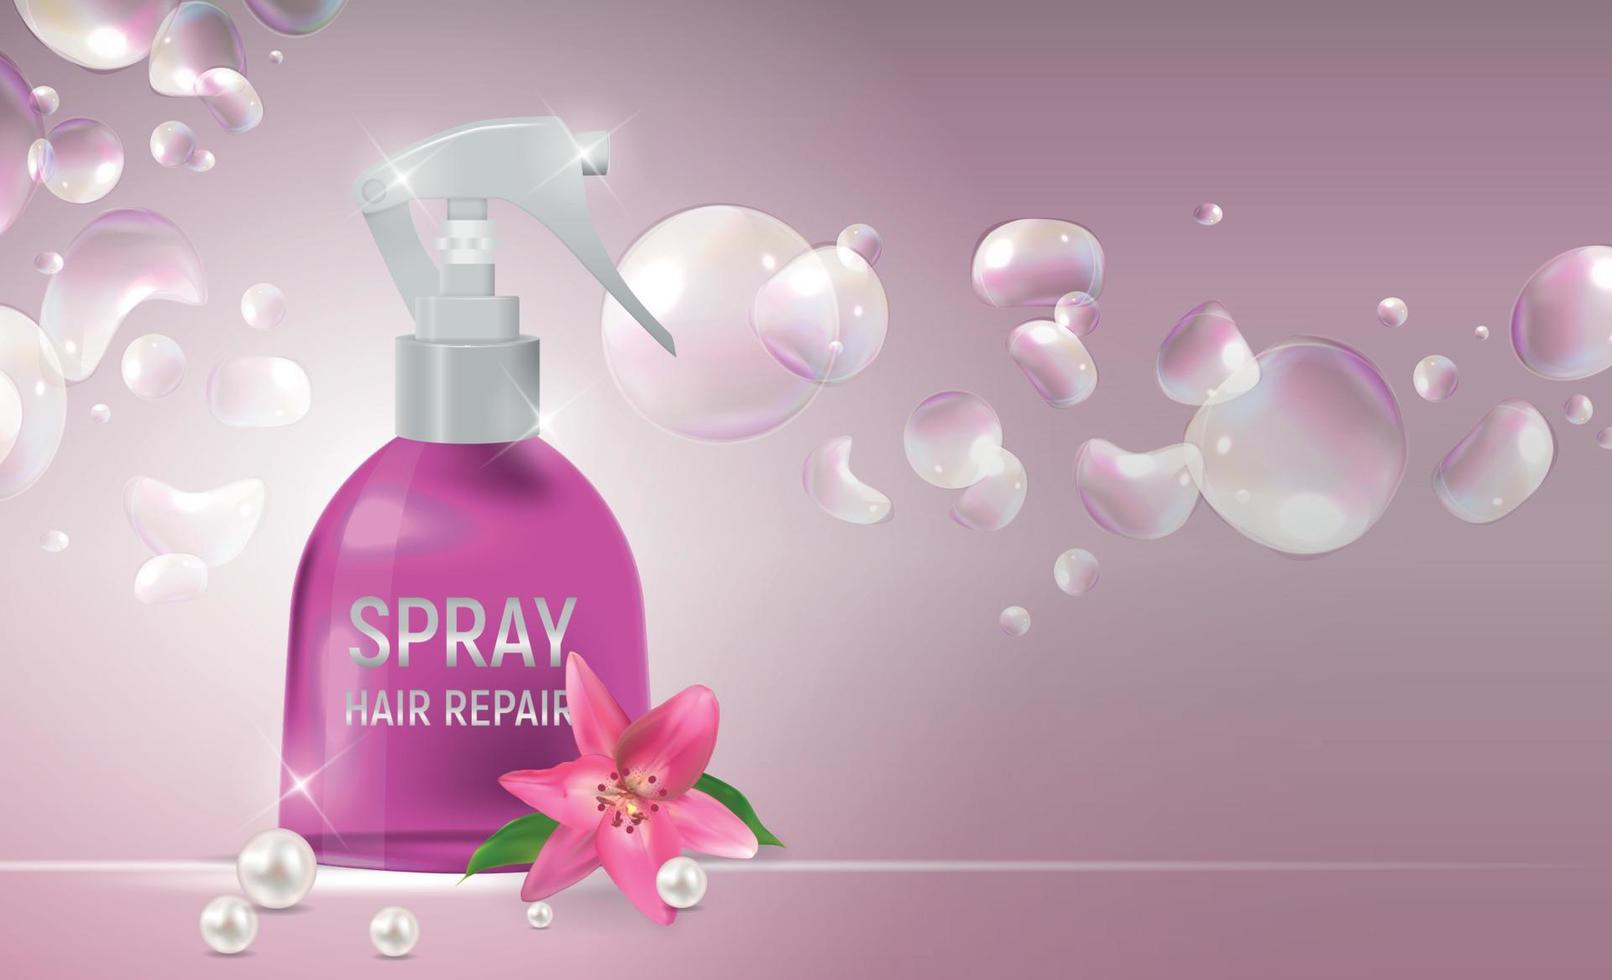 Diseñe la plantilla del producto de los cosméticos del espray de la reparación del pelo para los anuncios o el fondo de la revista. Ilustración de vector realista 3d